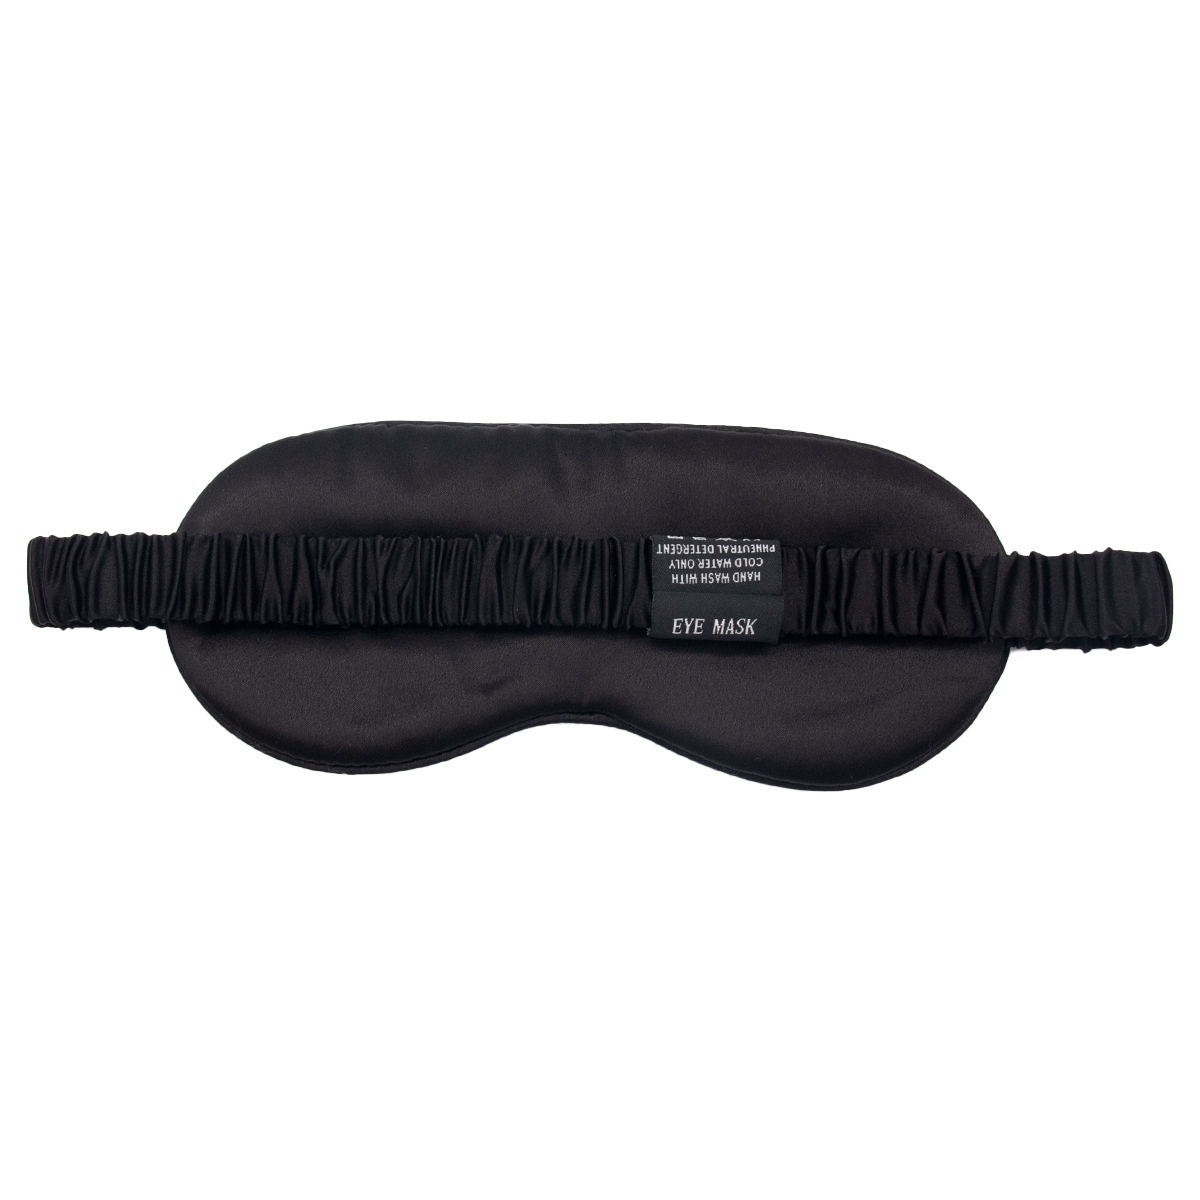 Amazon Hot Sale Mulberry Silk Sleep Eye Mask Blindfold With Elastic Strap Headband